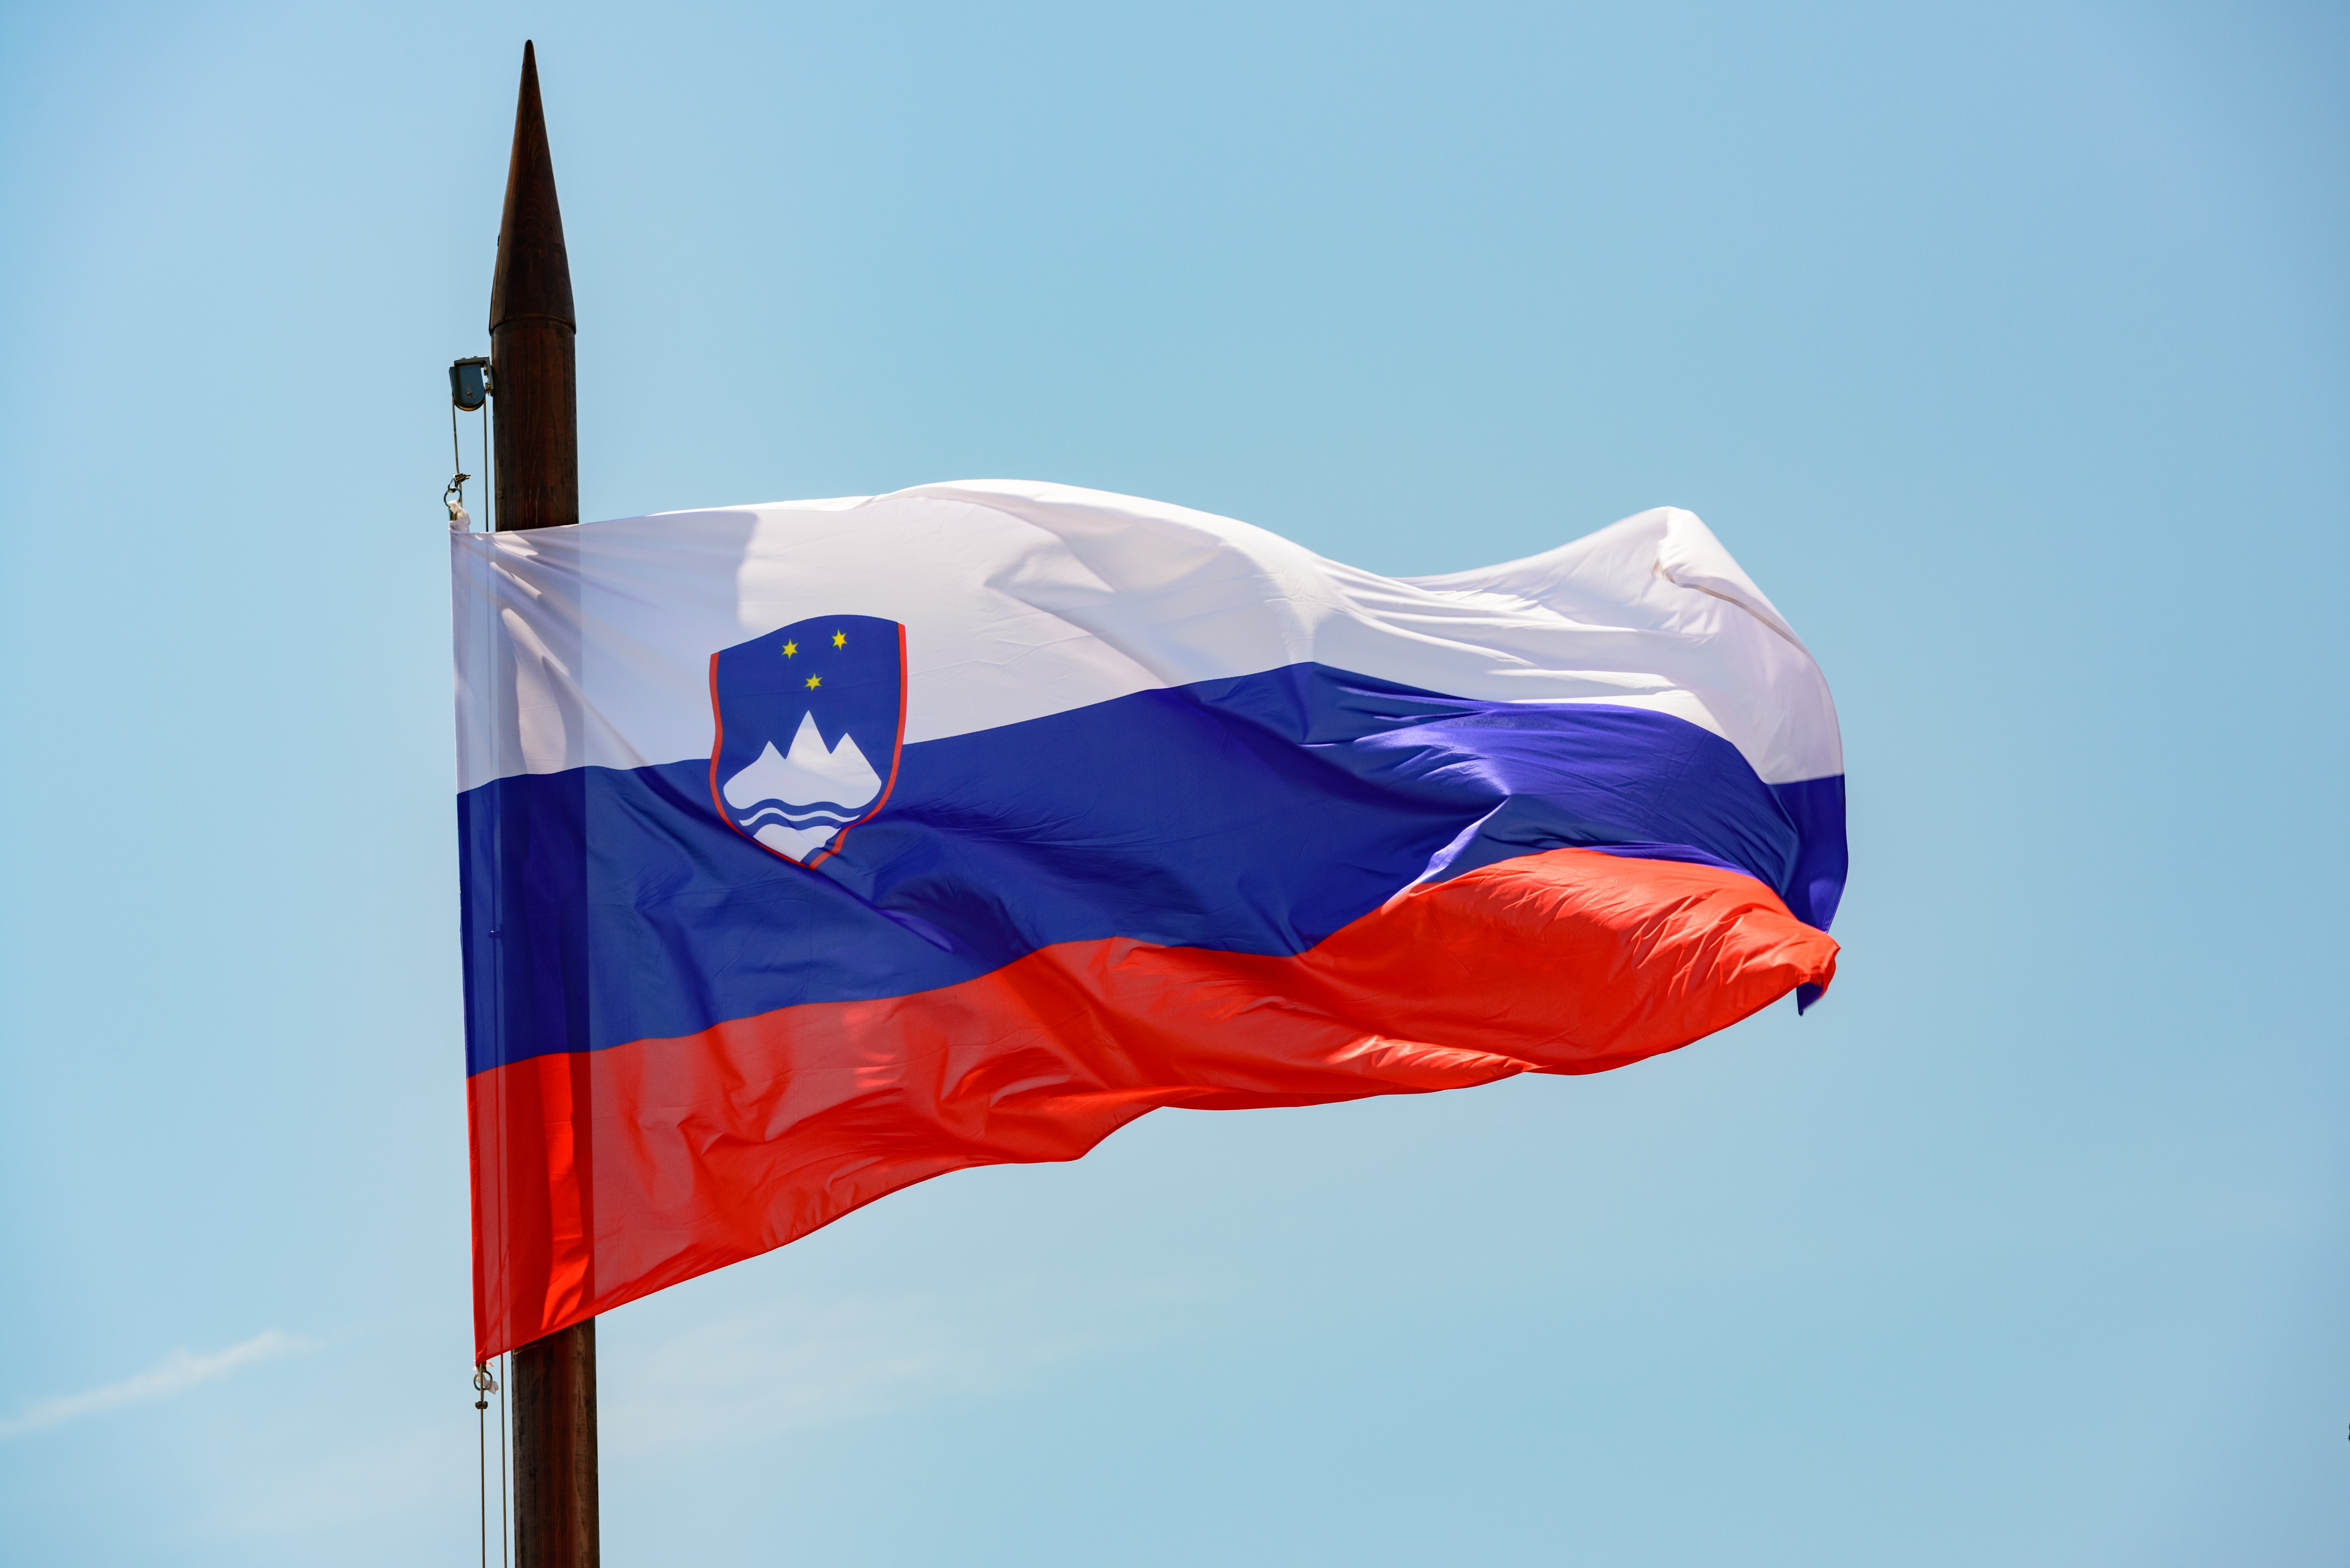 Slovenian Flag